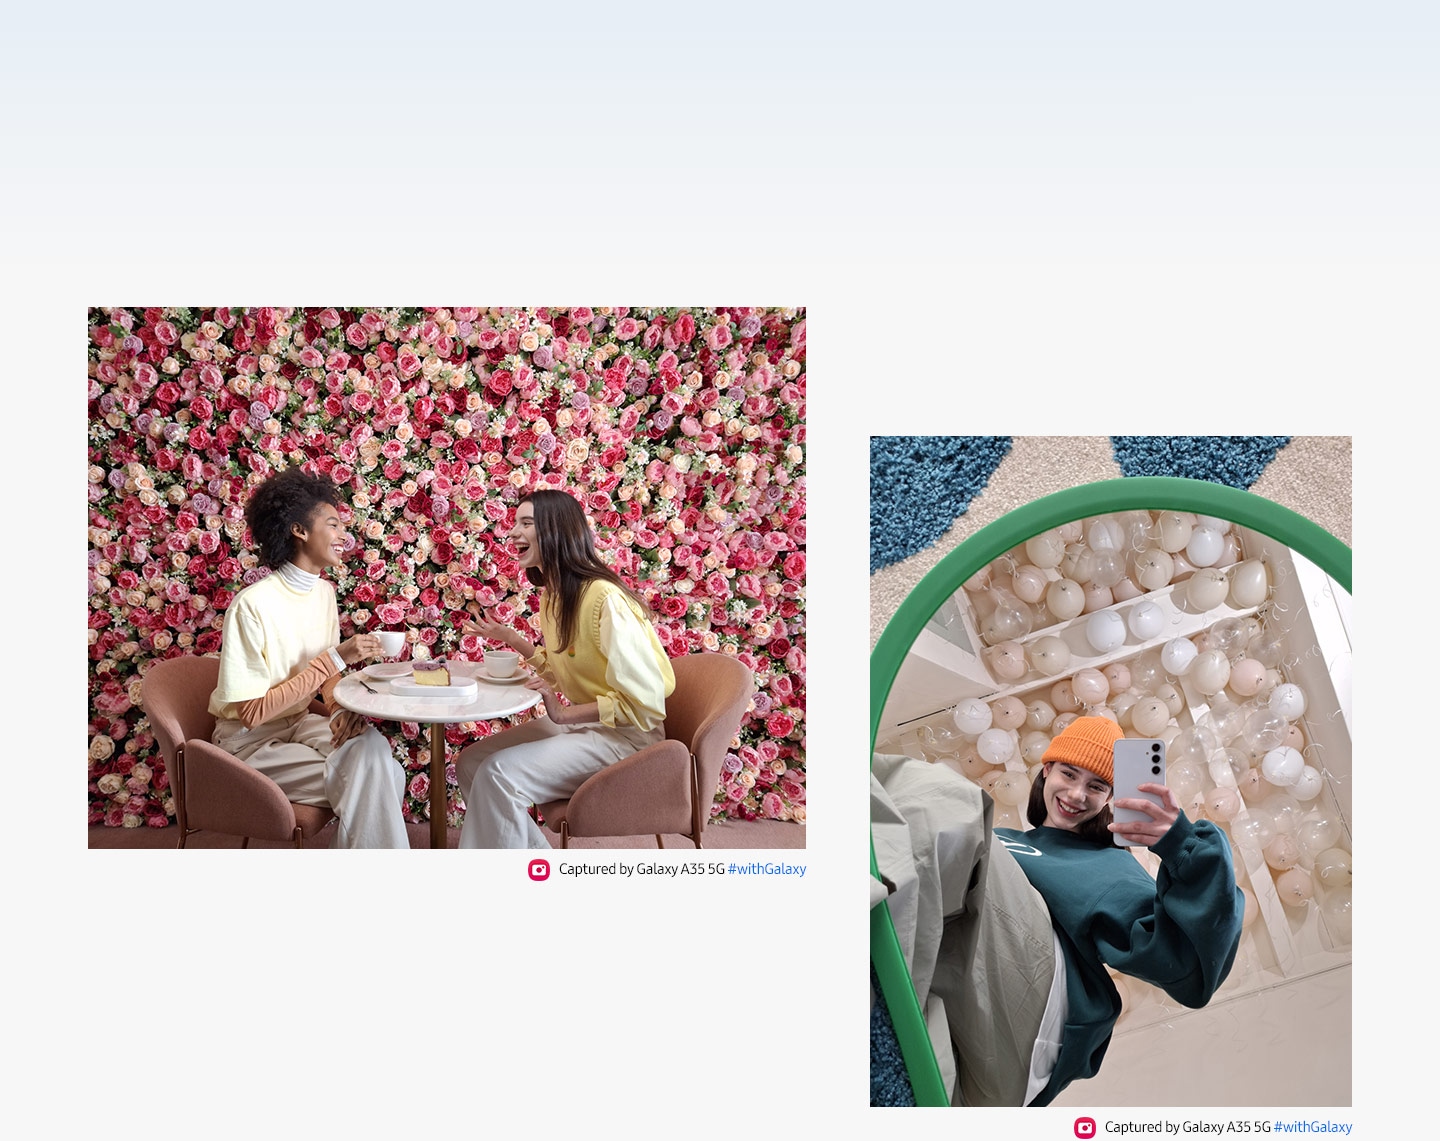 Deux personnes ont engagé une conversation autour d’une table, sur fond de mur floral rose vif. Et un selfie miroir d’une personne sur fond de ballons blancs. Le texte indique Capturé par le Galaxy A35 5G #withGalaxy.